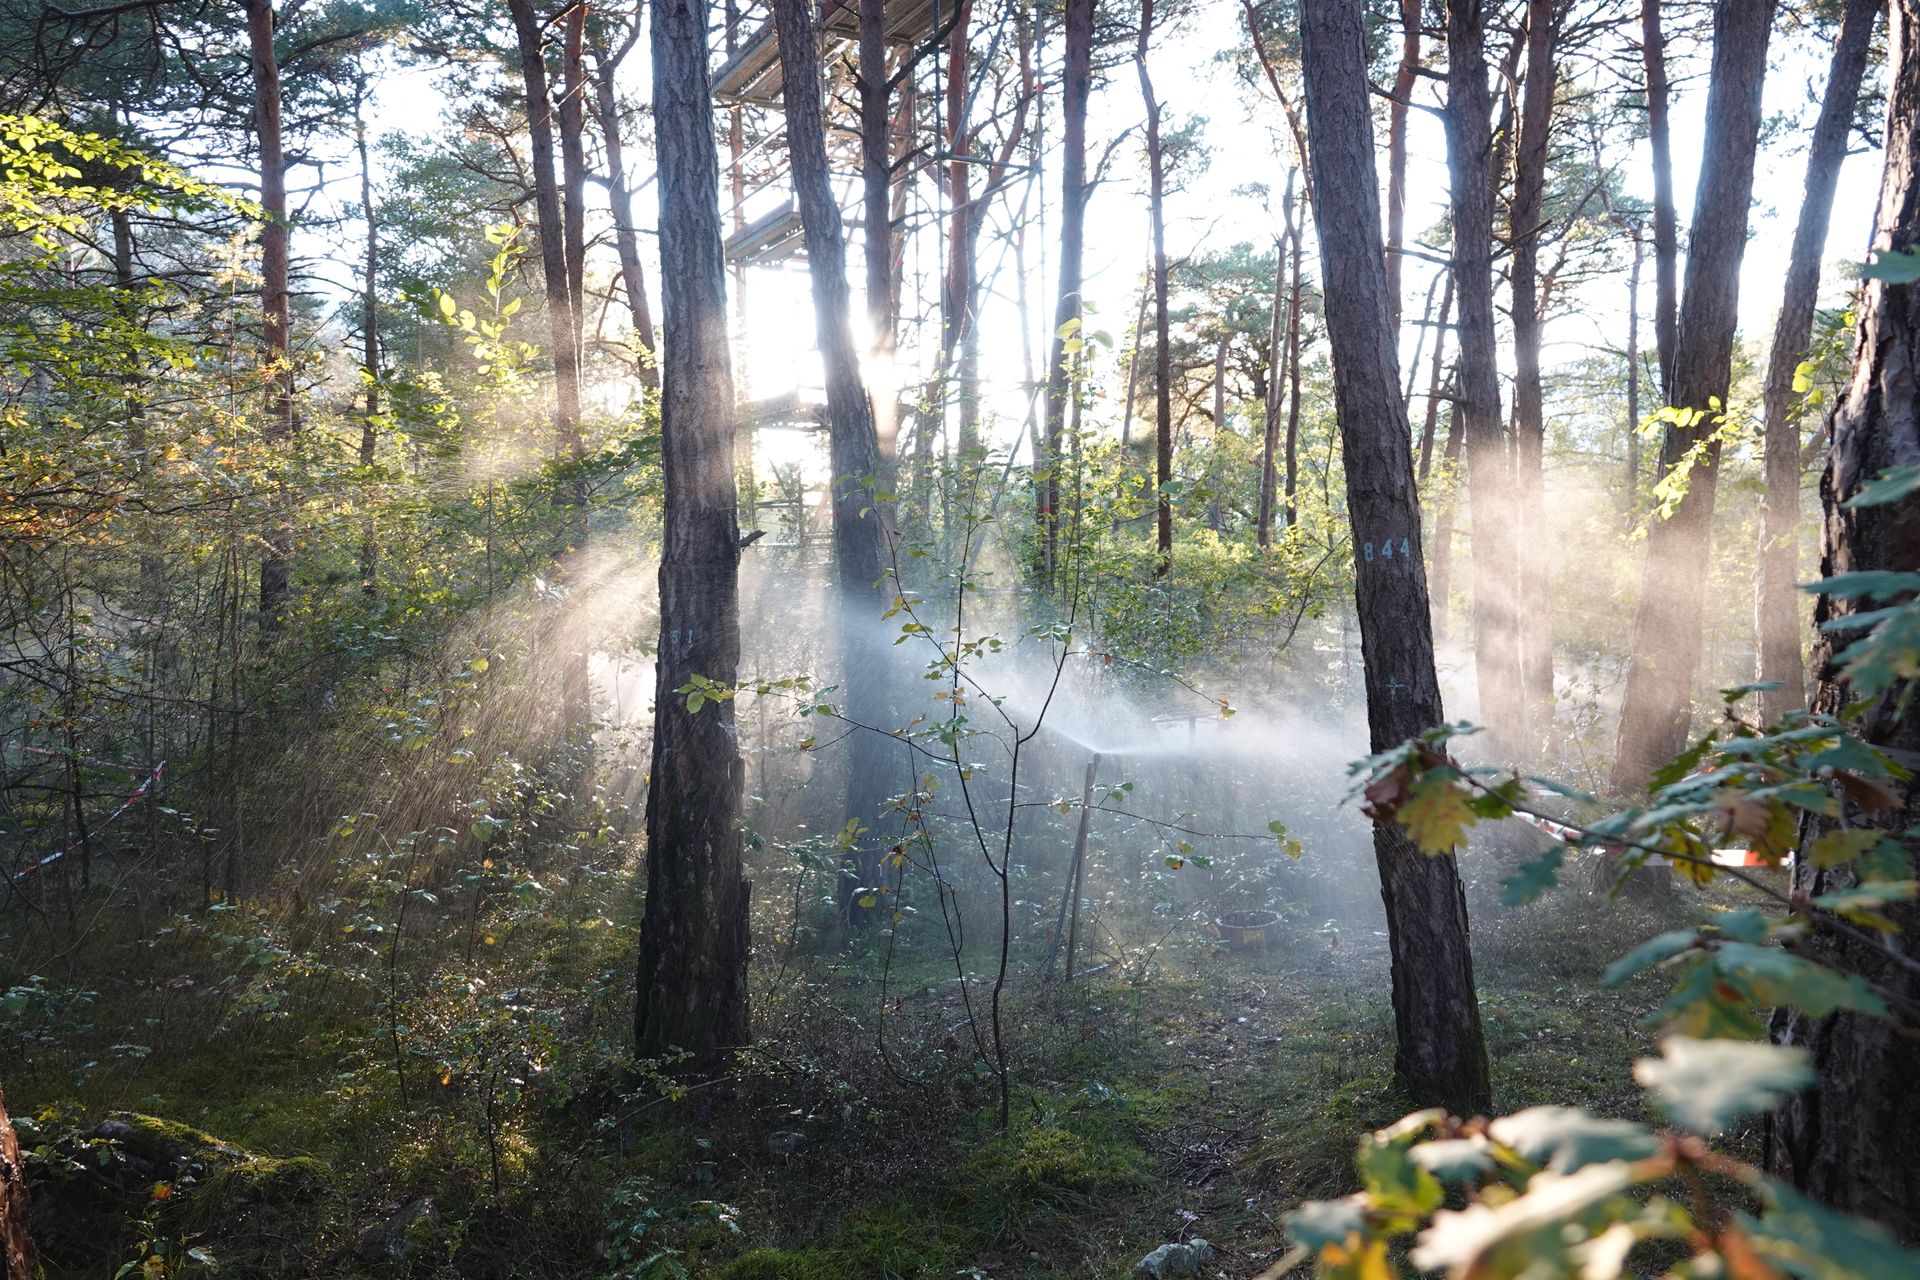 वालिस में पफिनवाल्ड के डब्ल्यूएसएल वन अनुसंधान स्थल के एक हिस्से में सिंचाई (फोटो मिशेल केनेल डोबबर्टिनडब्लूएसएल)